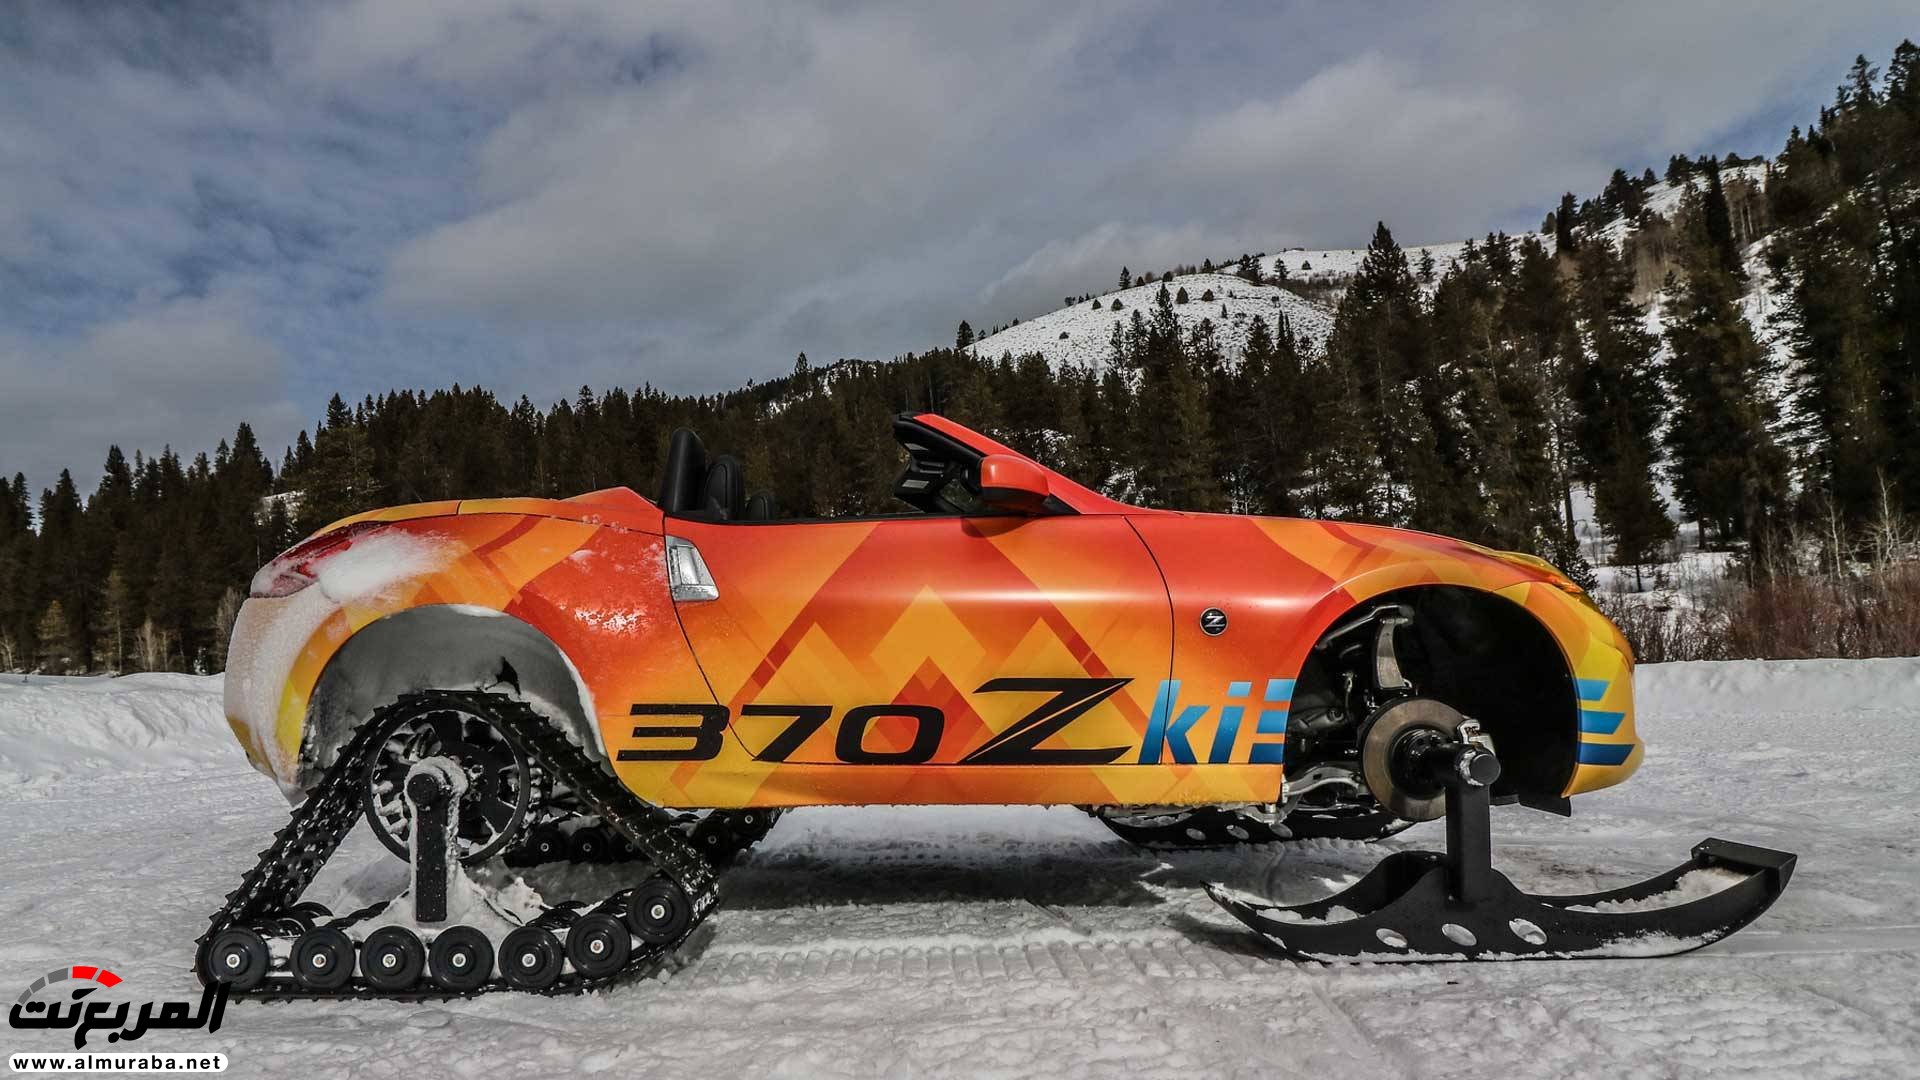 نيسان 370Zki المعدلة للسير على الثلوج تكشف نفسها 2